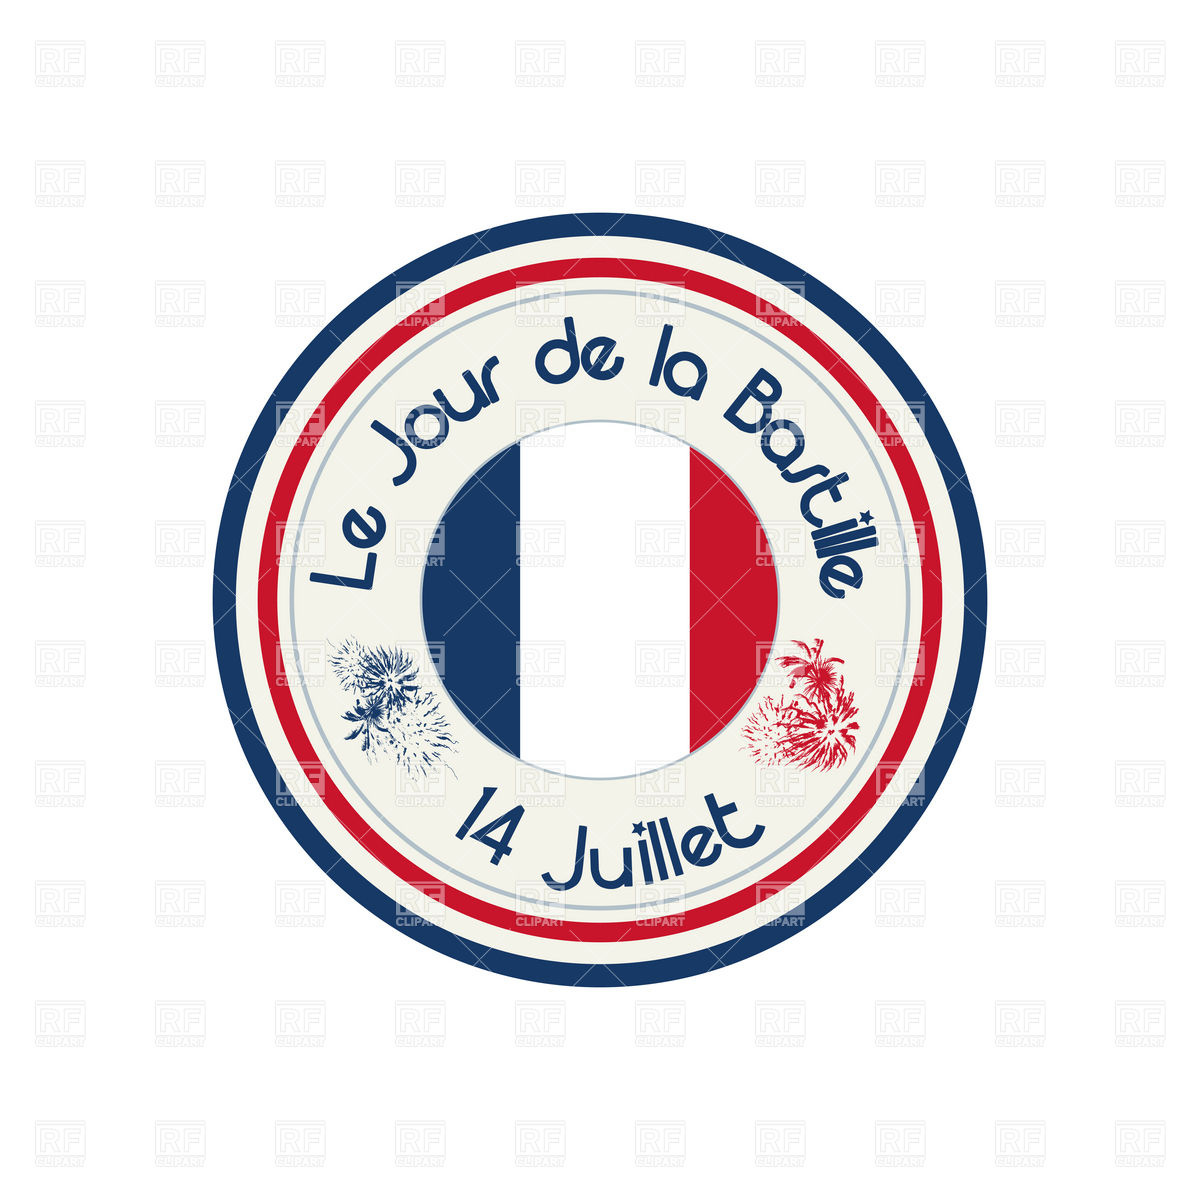 Bastille Day celebration stamp, Icons and Emblems, download ...